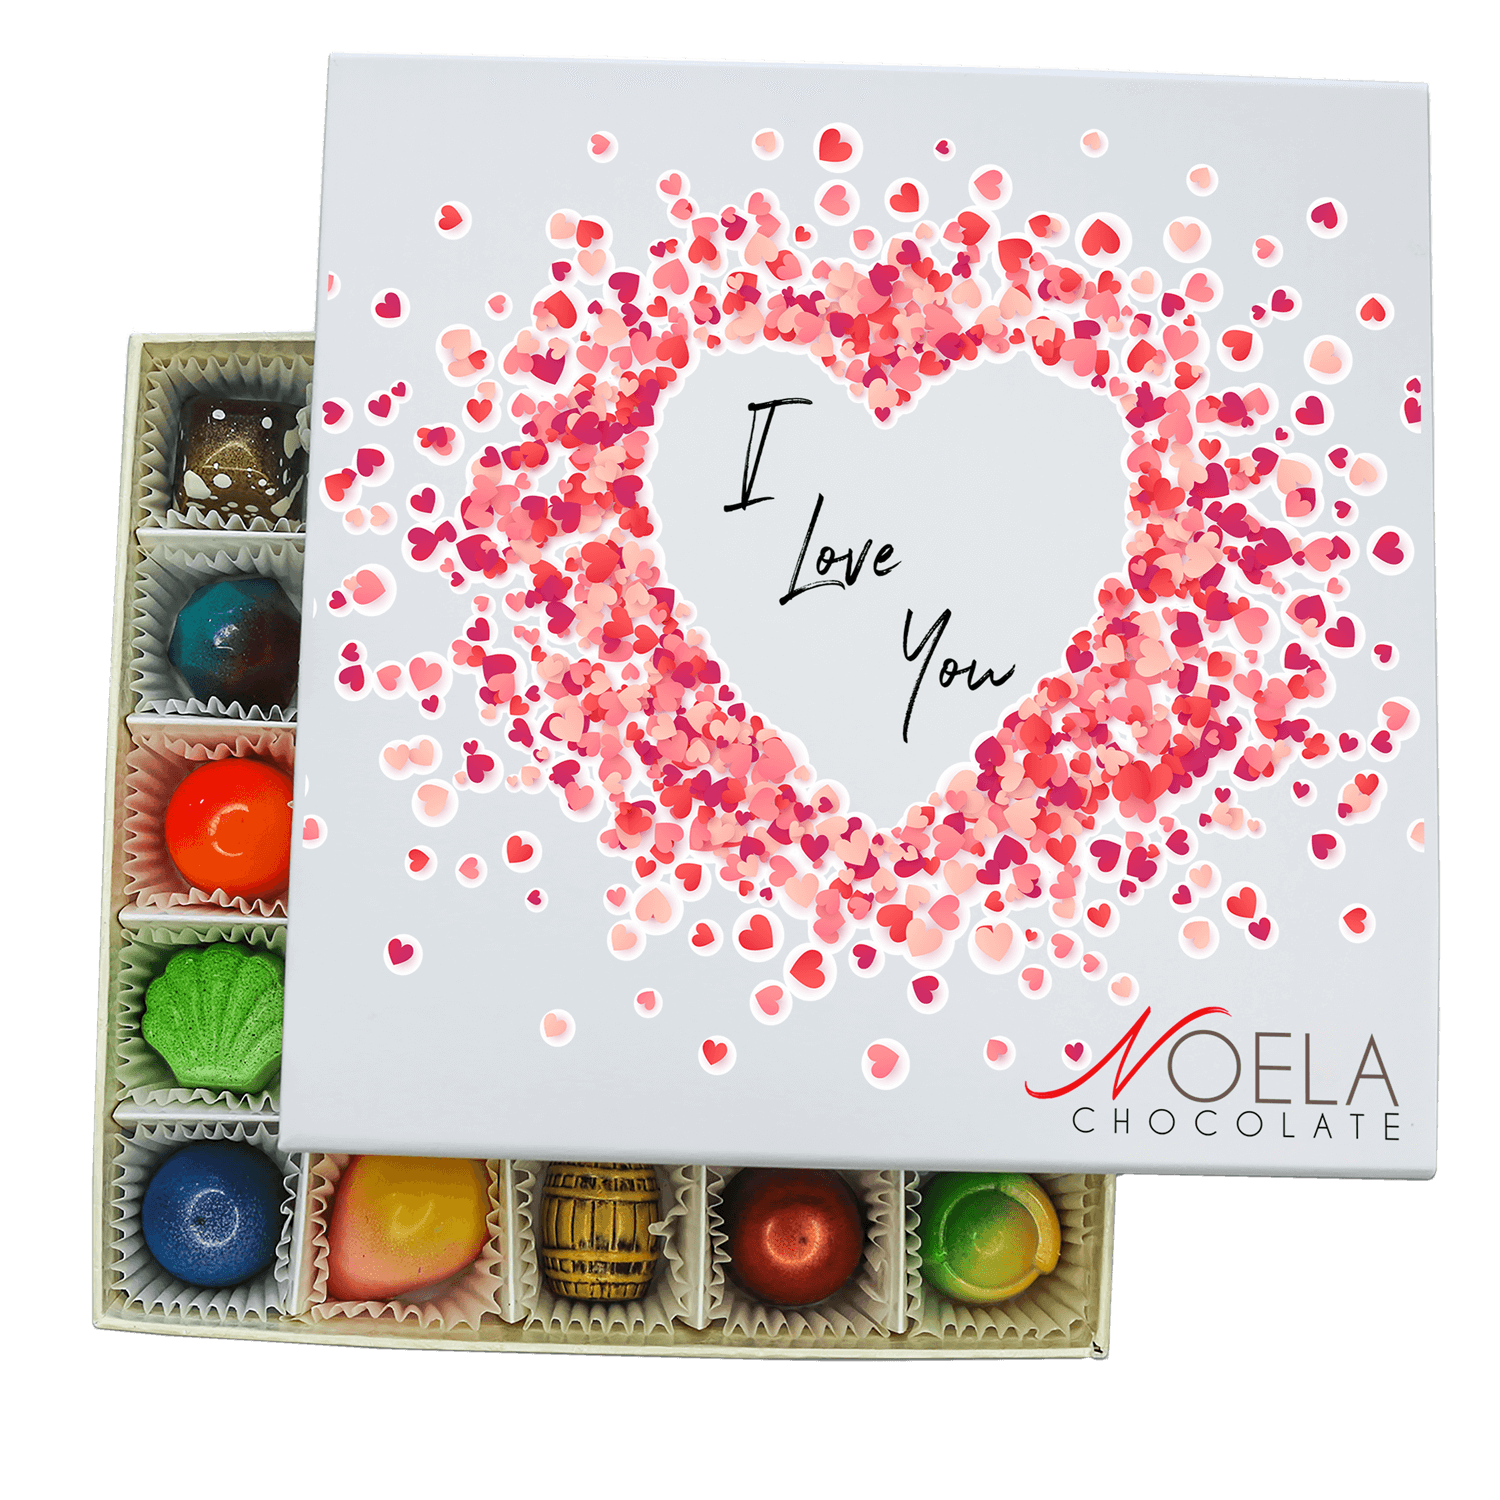 Heart confetti – Send it Sweetly